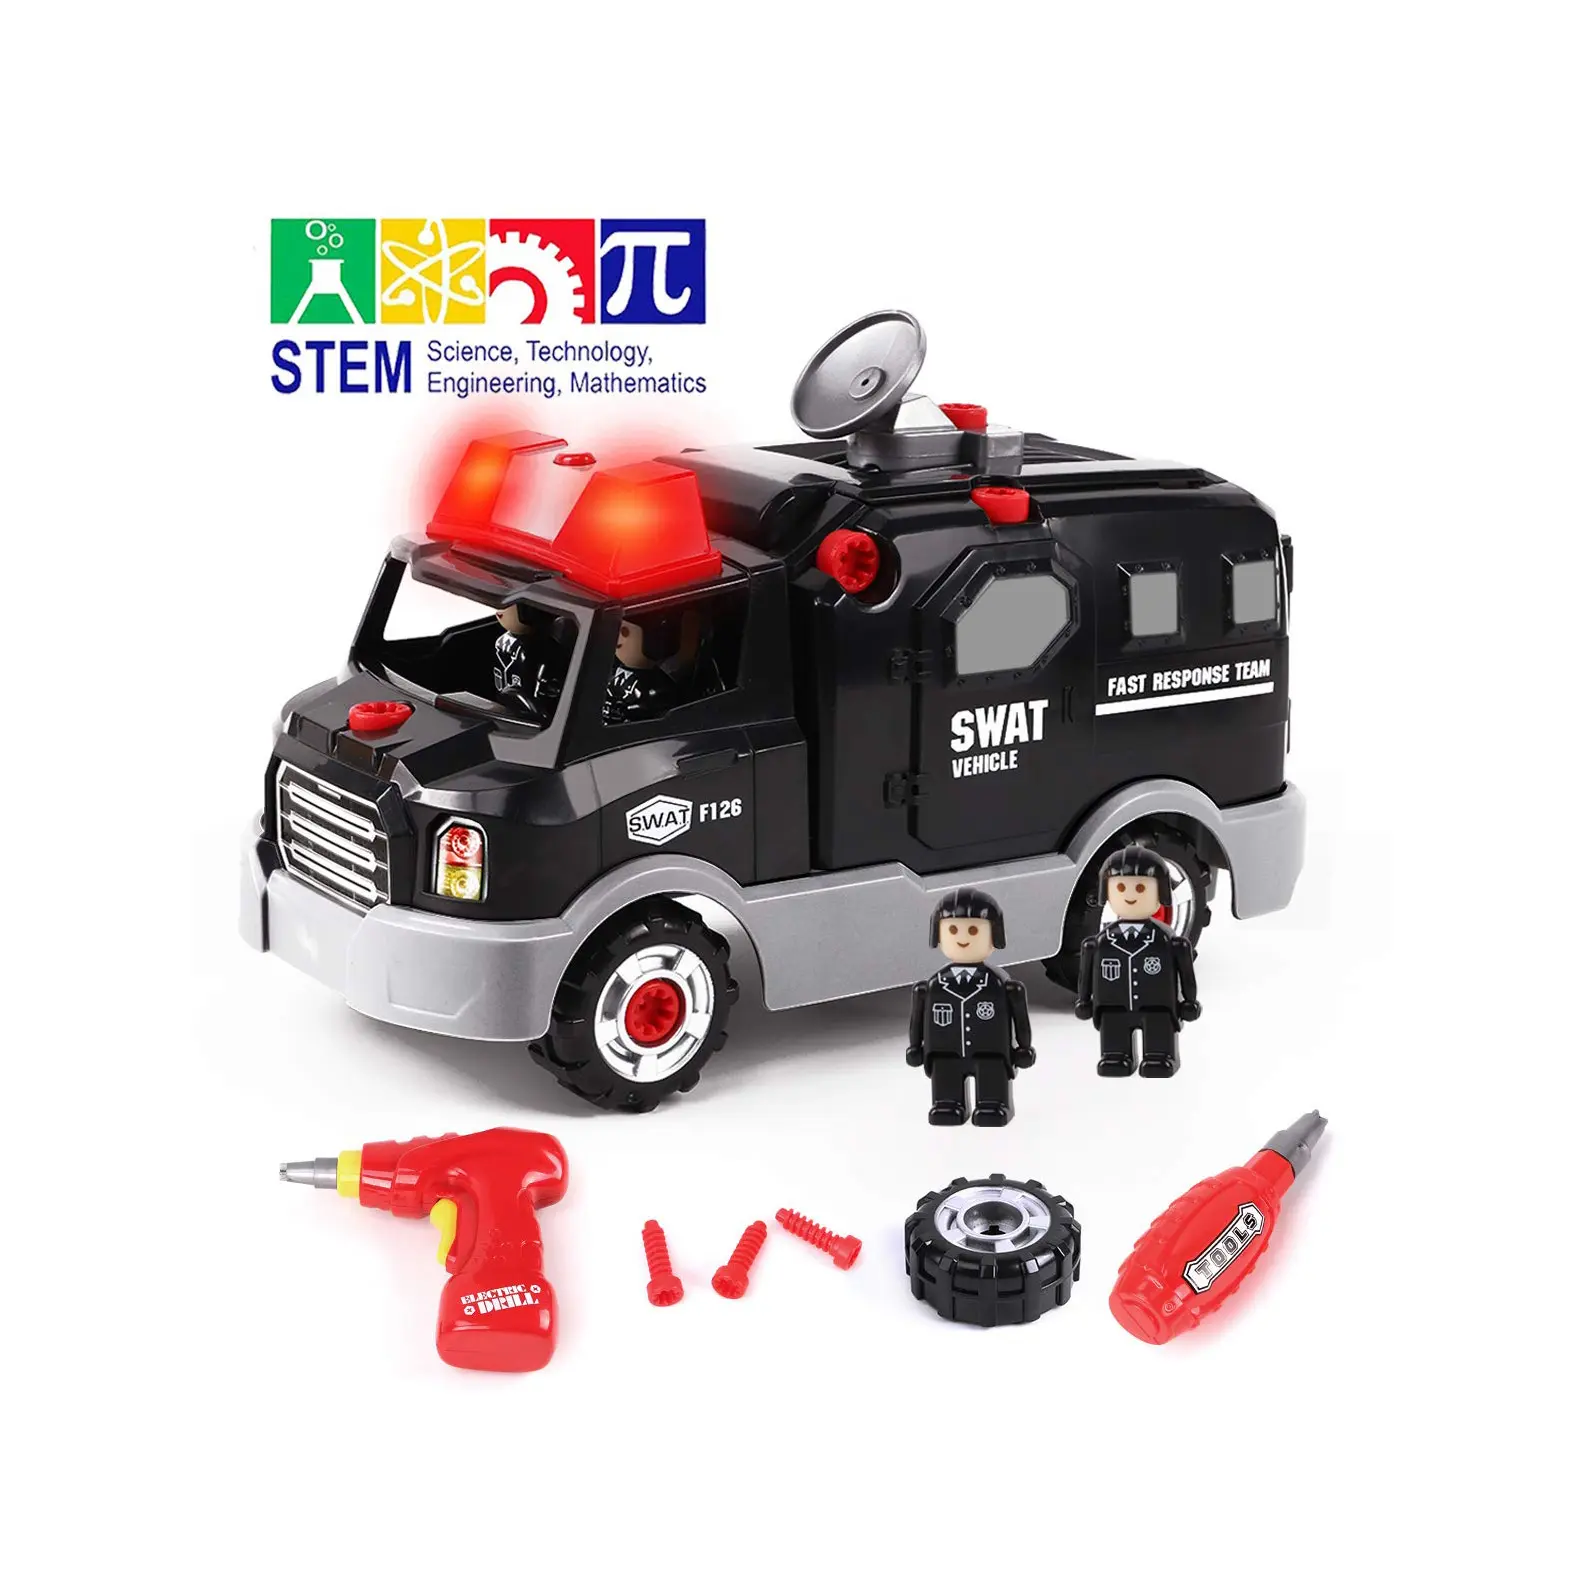 Take Apart Toys coche de carreras de policía, juguetes DIY STEM construir en su propio coche juguetes con la policía, niños taladros herramienta juguetes